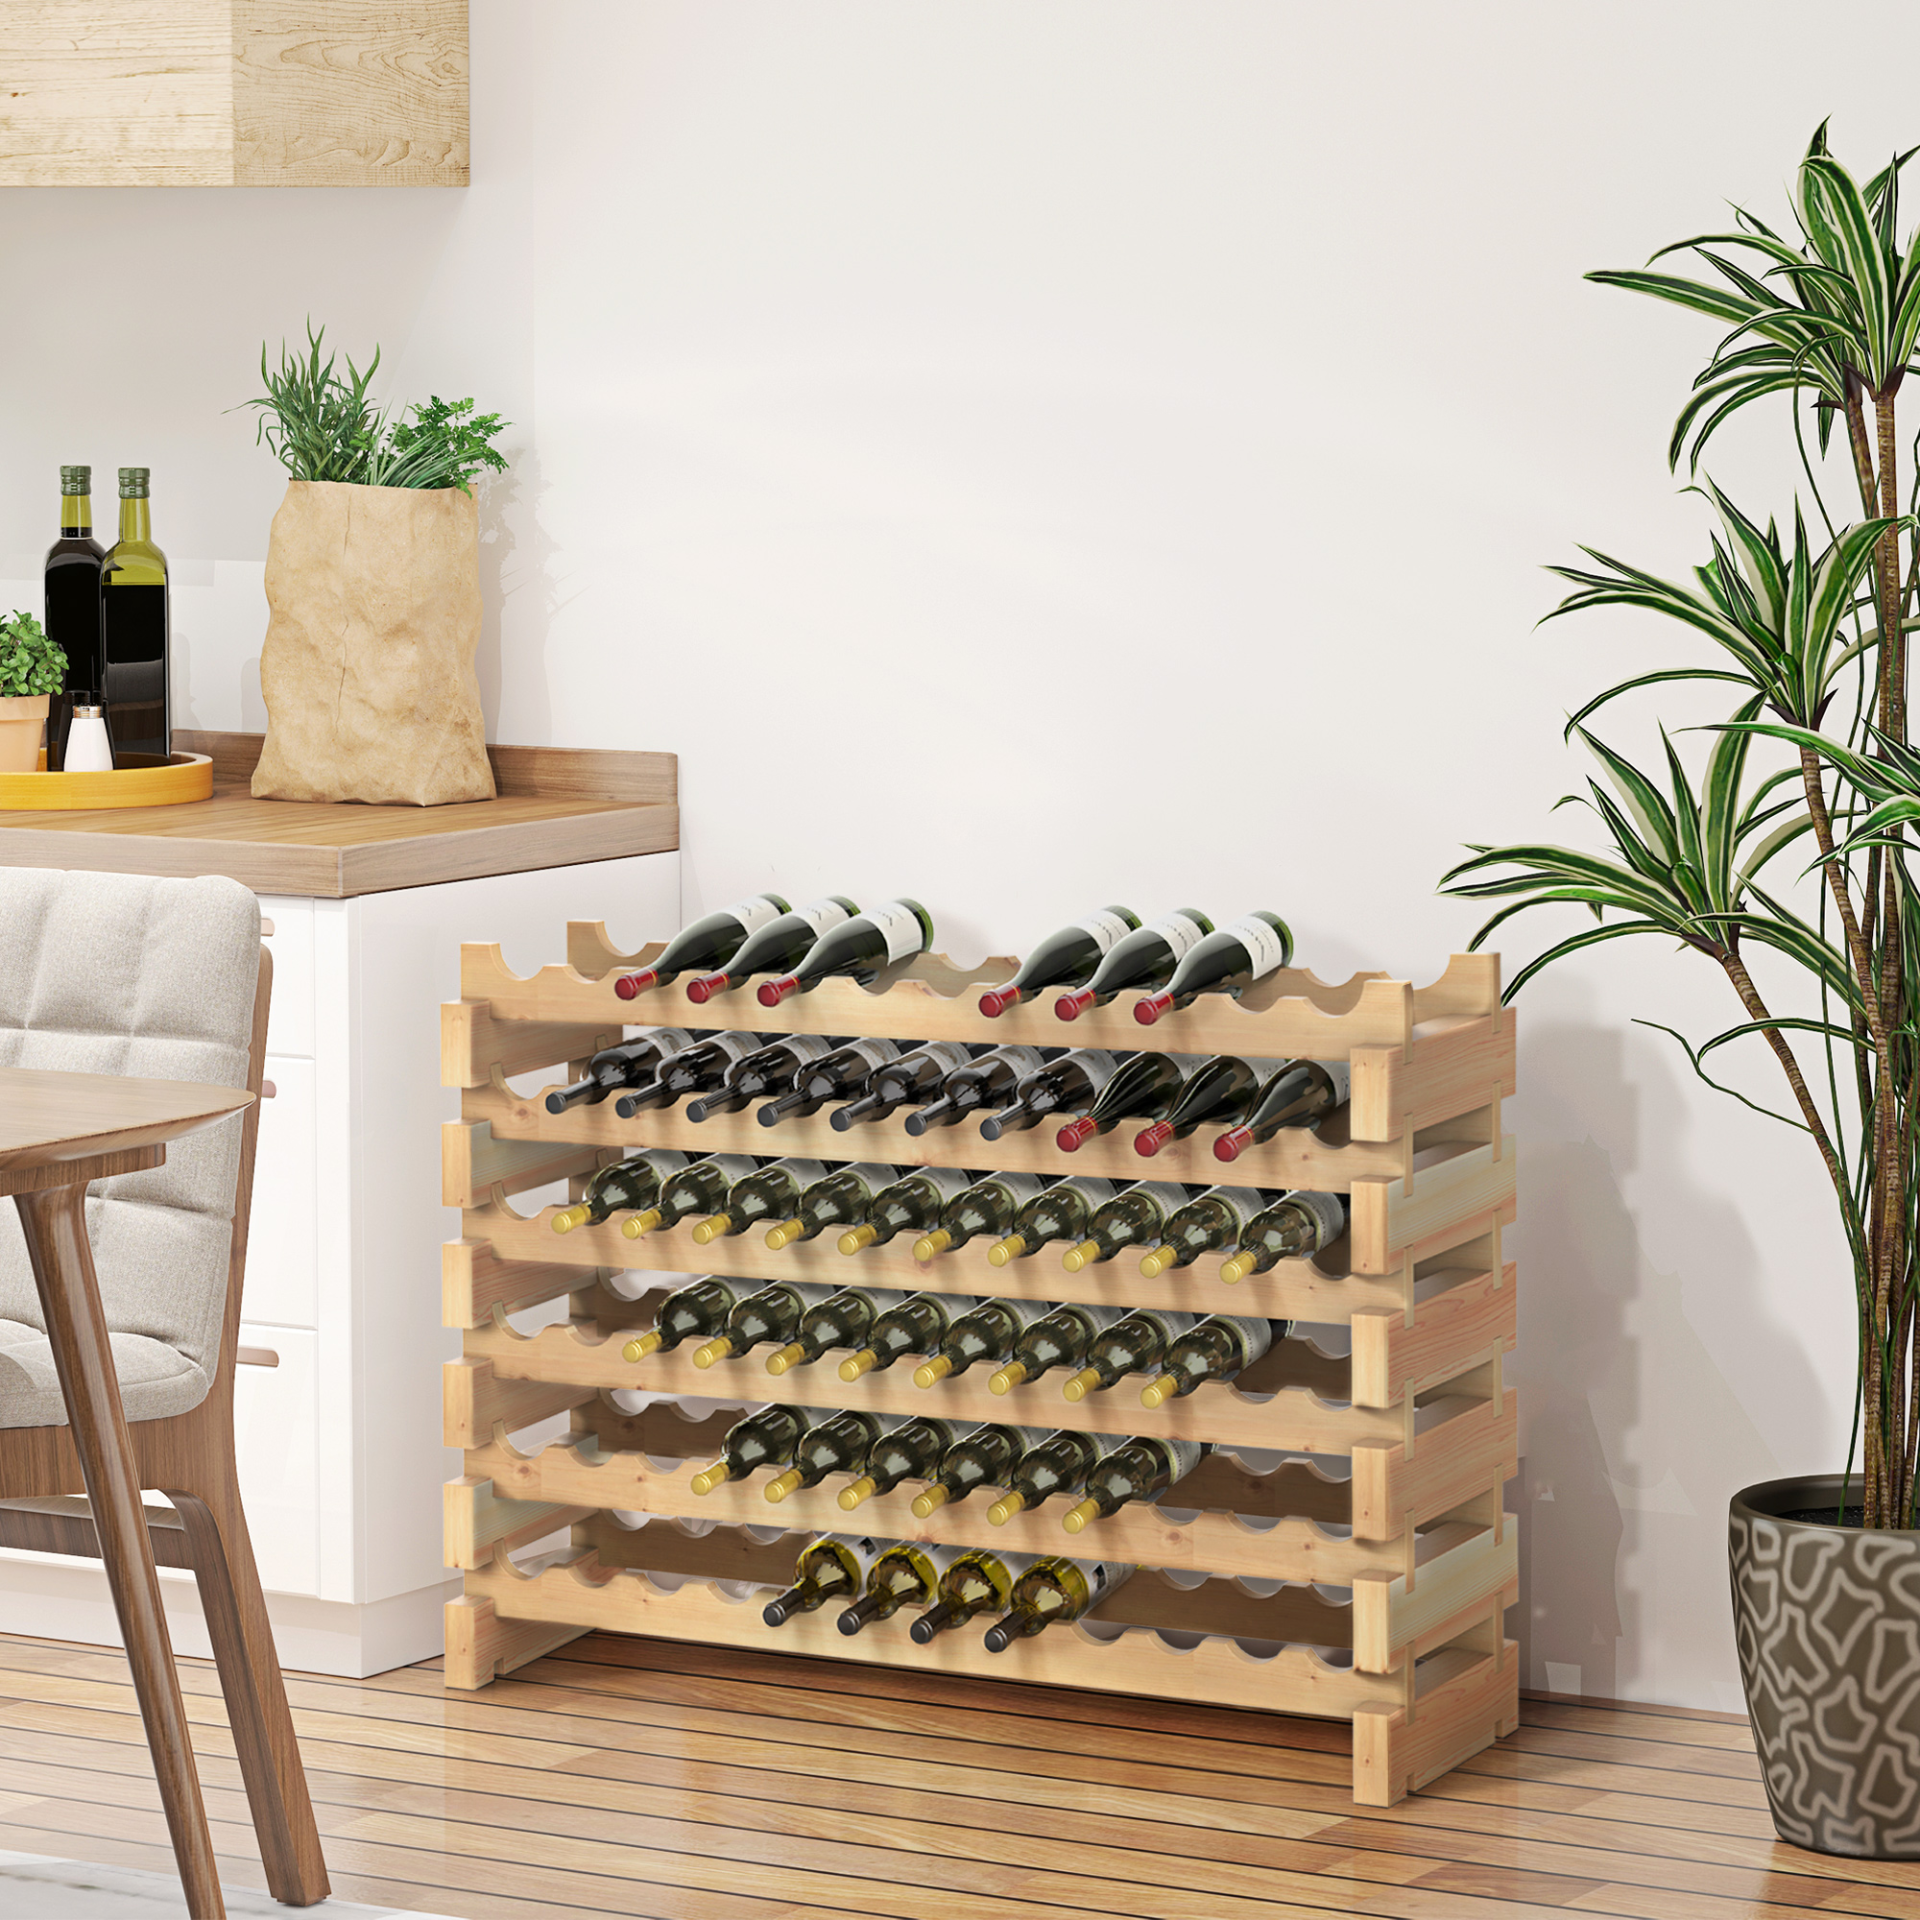 HOMCOM Wooden Wine Rack 6 Tier Shelf for 72 Bottles Shelving Storage Holder